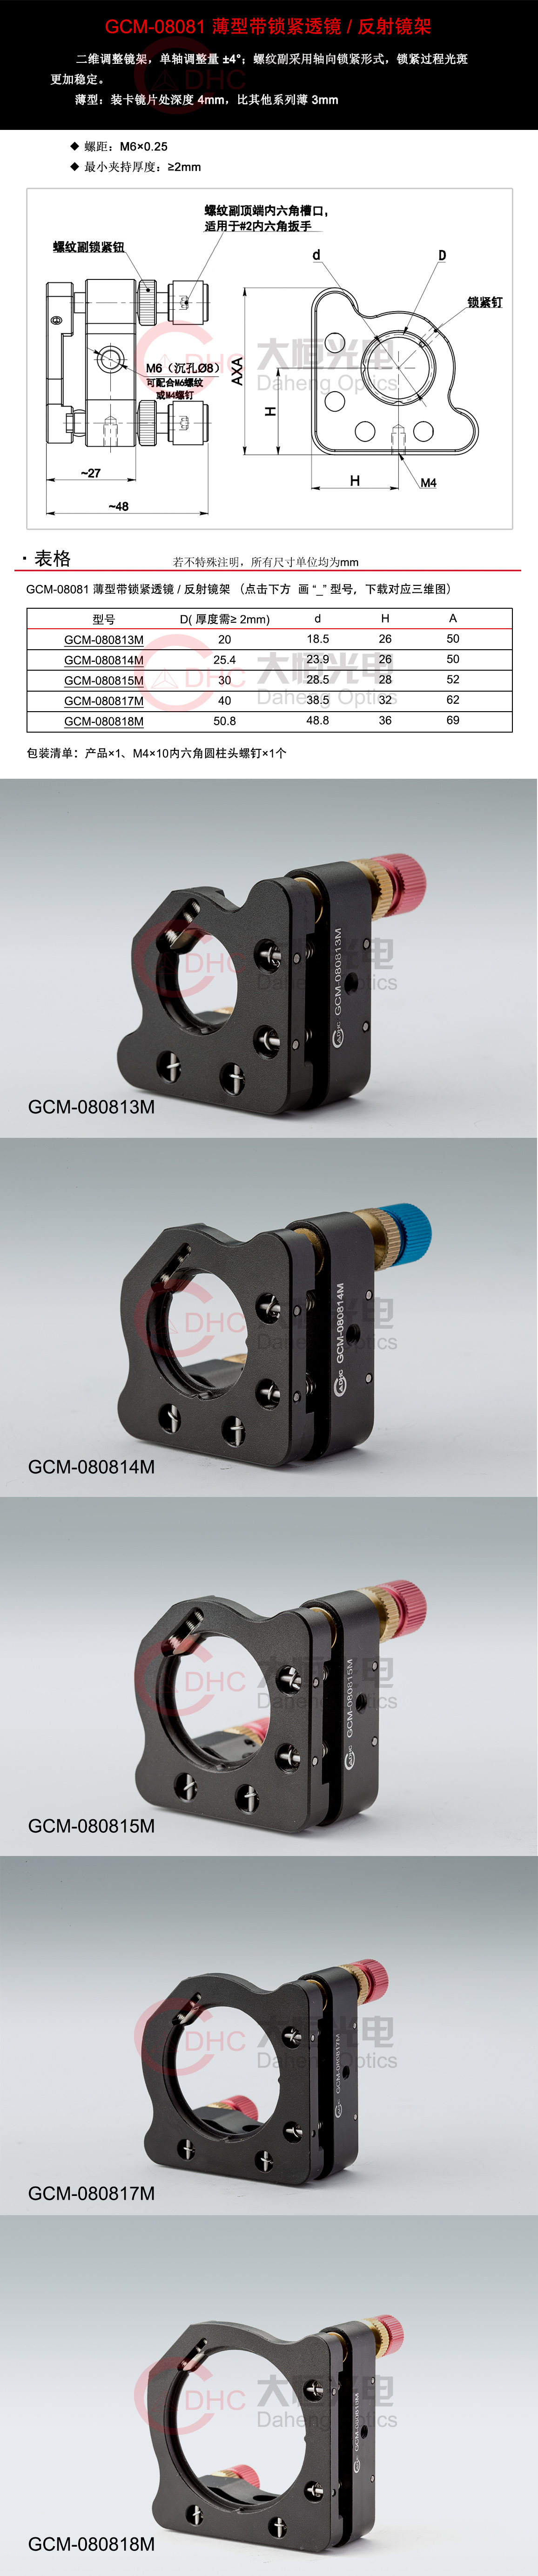 GCM-08081系列薄型带锁紧透镜反射镜架+三维.jpg